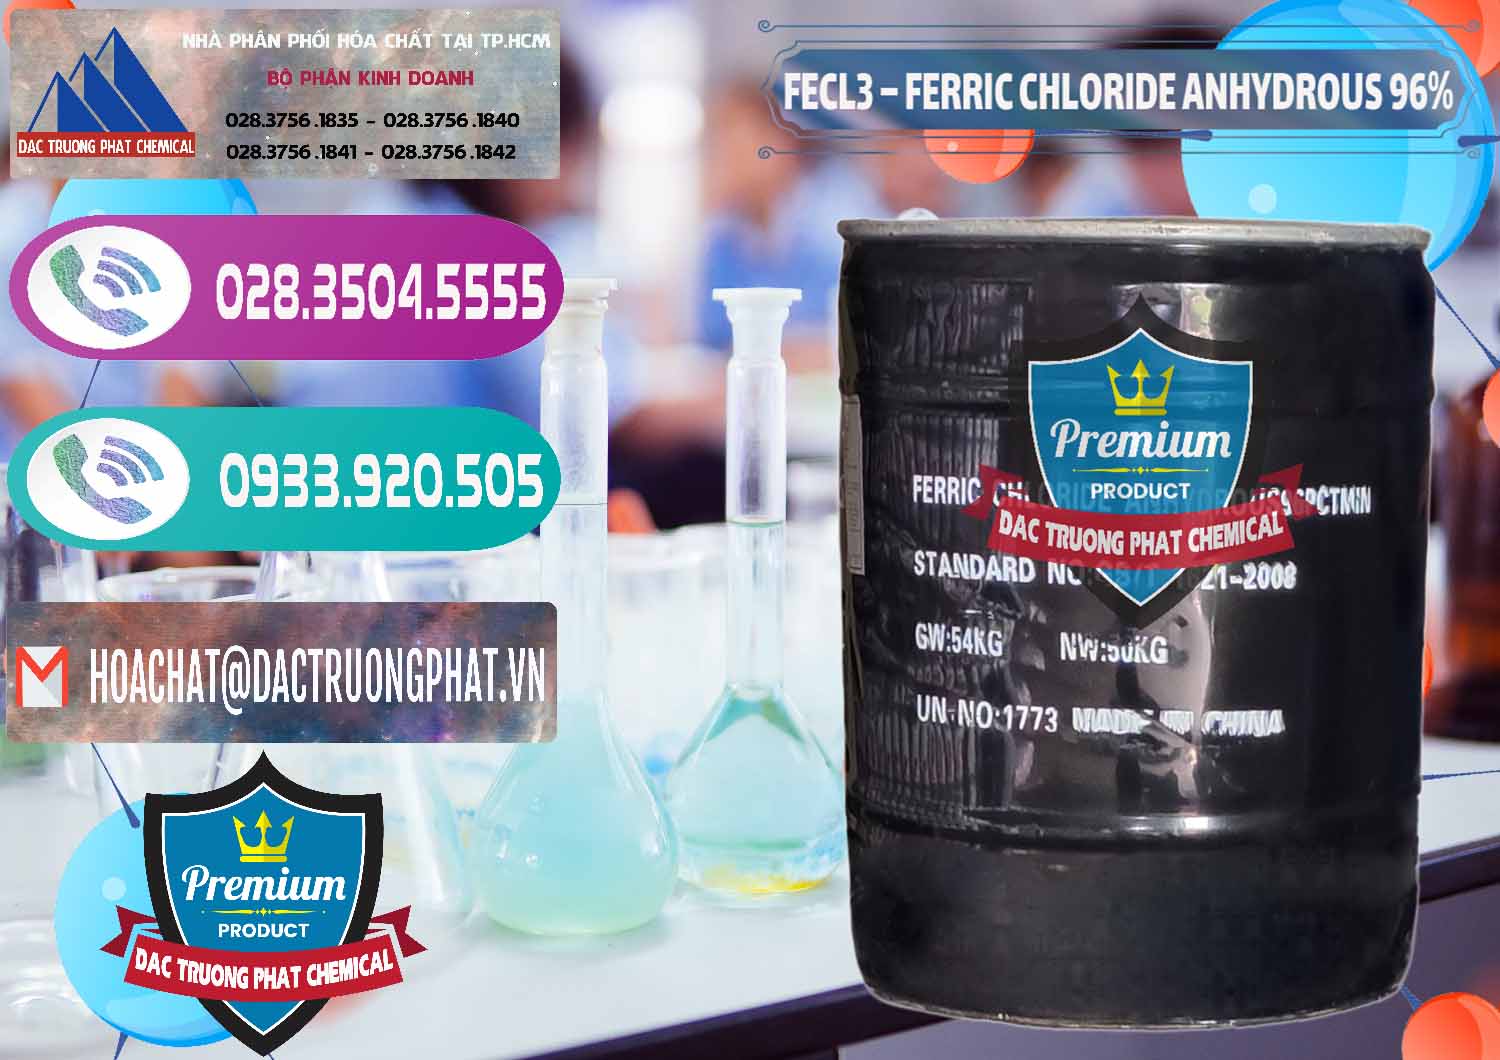 Chuyên cung cấp ( bán ) FECL3 – Ferric Chloride Anhydrous 96% Trung Quốc China - 0065 - Nơi chuyên cung ứng và phân phối hóa chất tại TP.HCM - hoachatxulynuoc.com